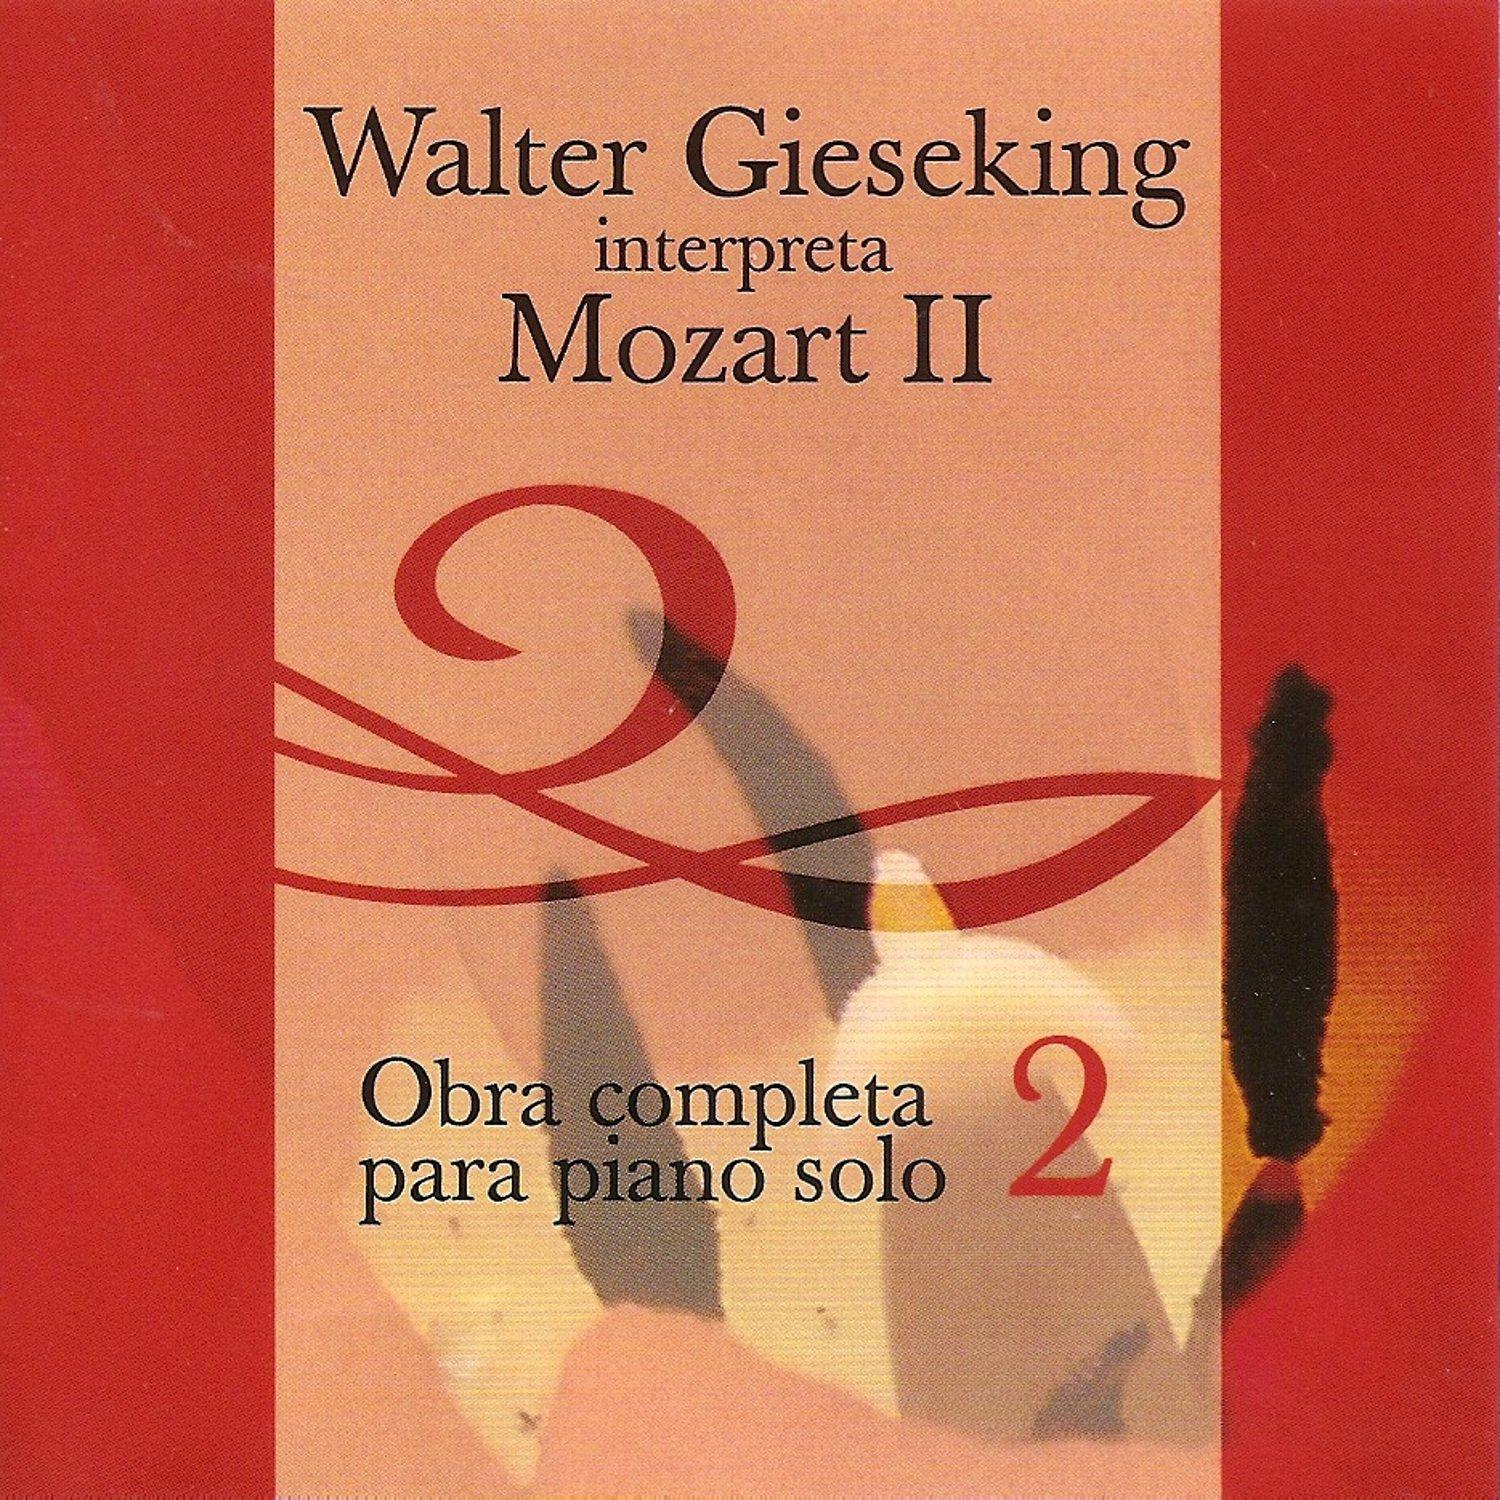 Walter Gieseking Interpreta a Mozart 2 - Obra Completa para Piano Solo Vol. 2